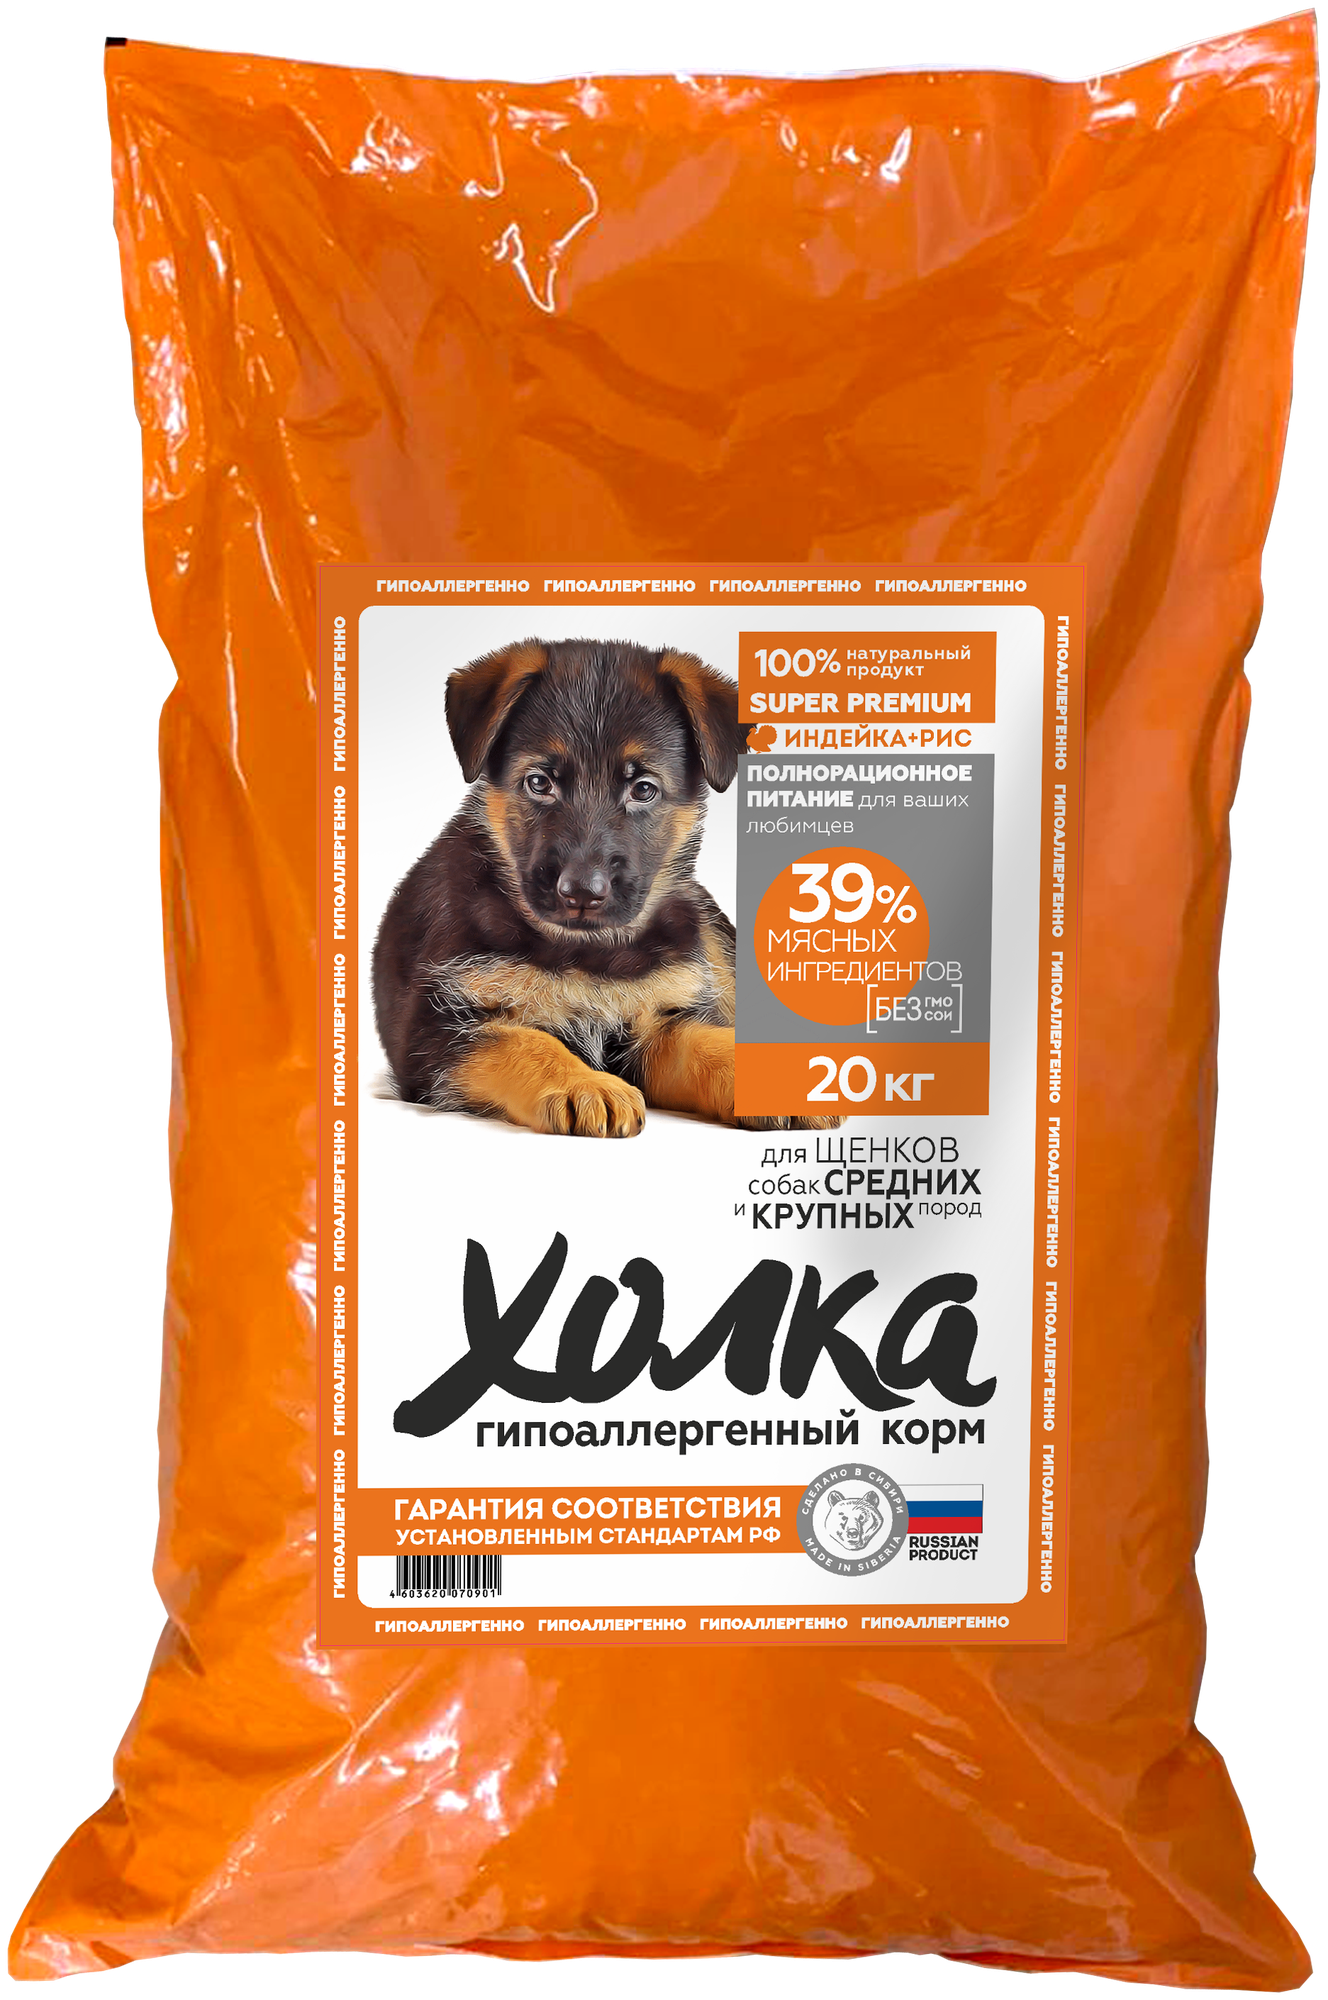 Гипоаллергенный полнорационный корм "Холка" для щенков собак средних и крупных пород (39% мяса) из индейки и риса 20 кг